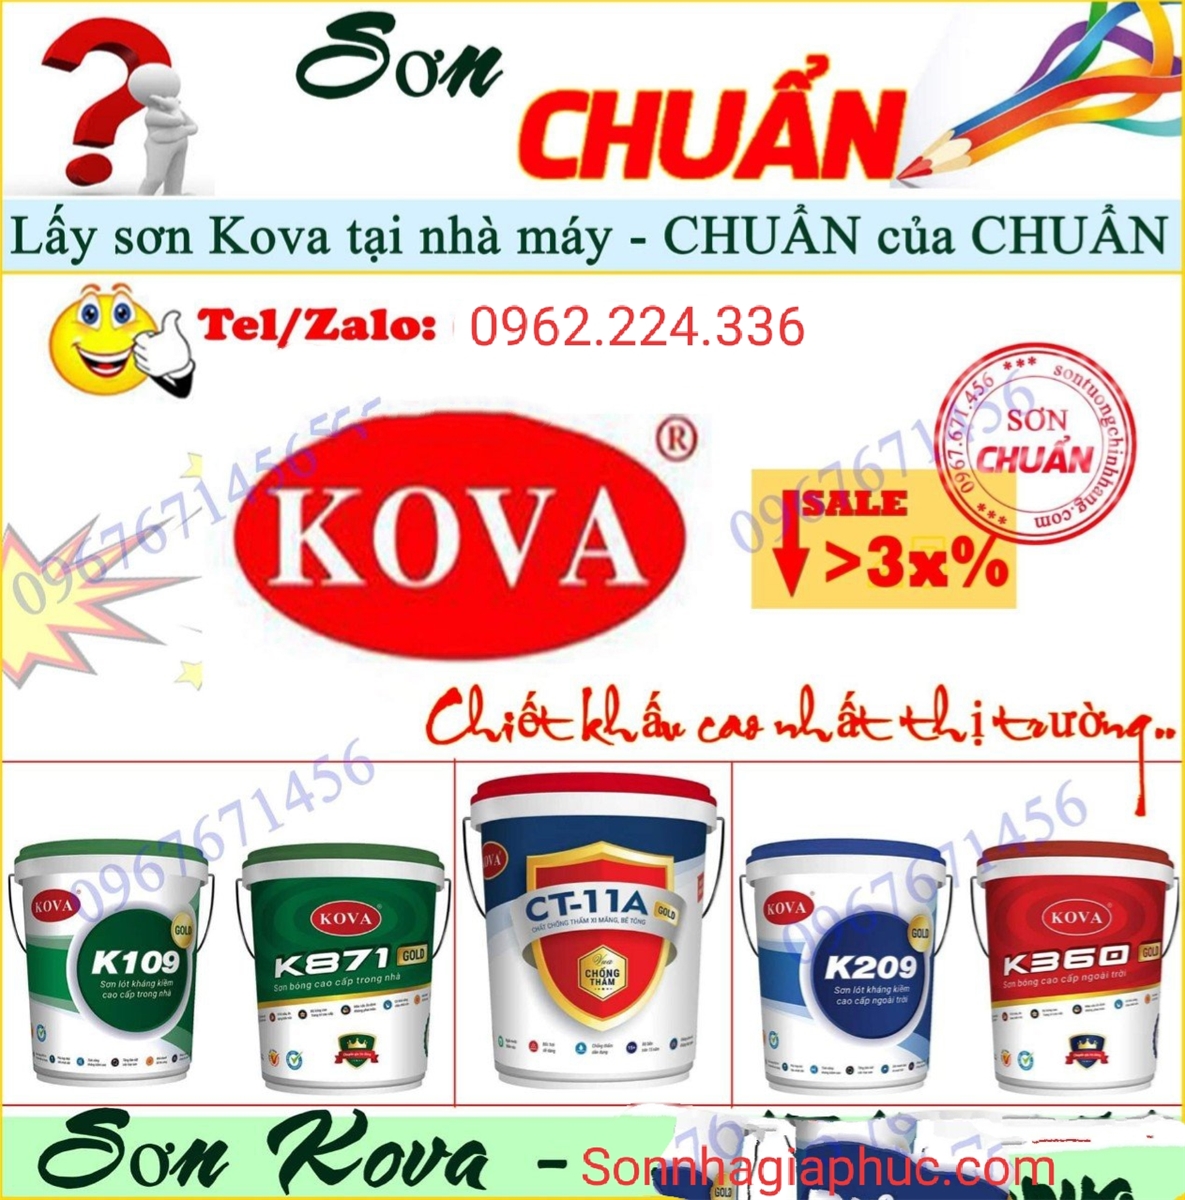 Đại lý sơn Kova chính hãng tại Hà Nội đang là địa chỉ mua sắm sơn Kova được người tiêu dùng tin tưởng nhất. Với sản phẩm chất lượng và dịch vụ tốt, Đại lý sơn Kova chính hãng tại Hà Nội là điểm đến cho bạn.